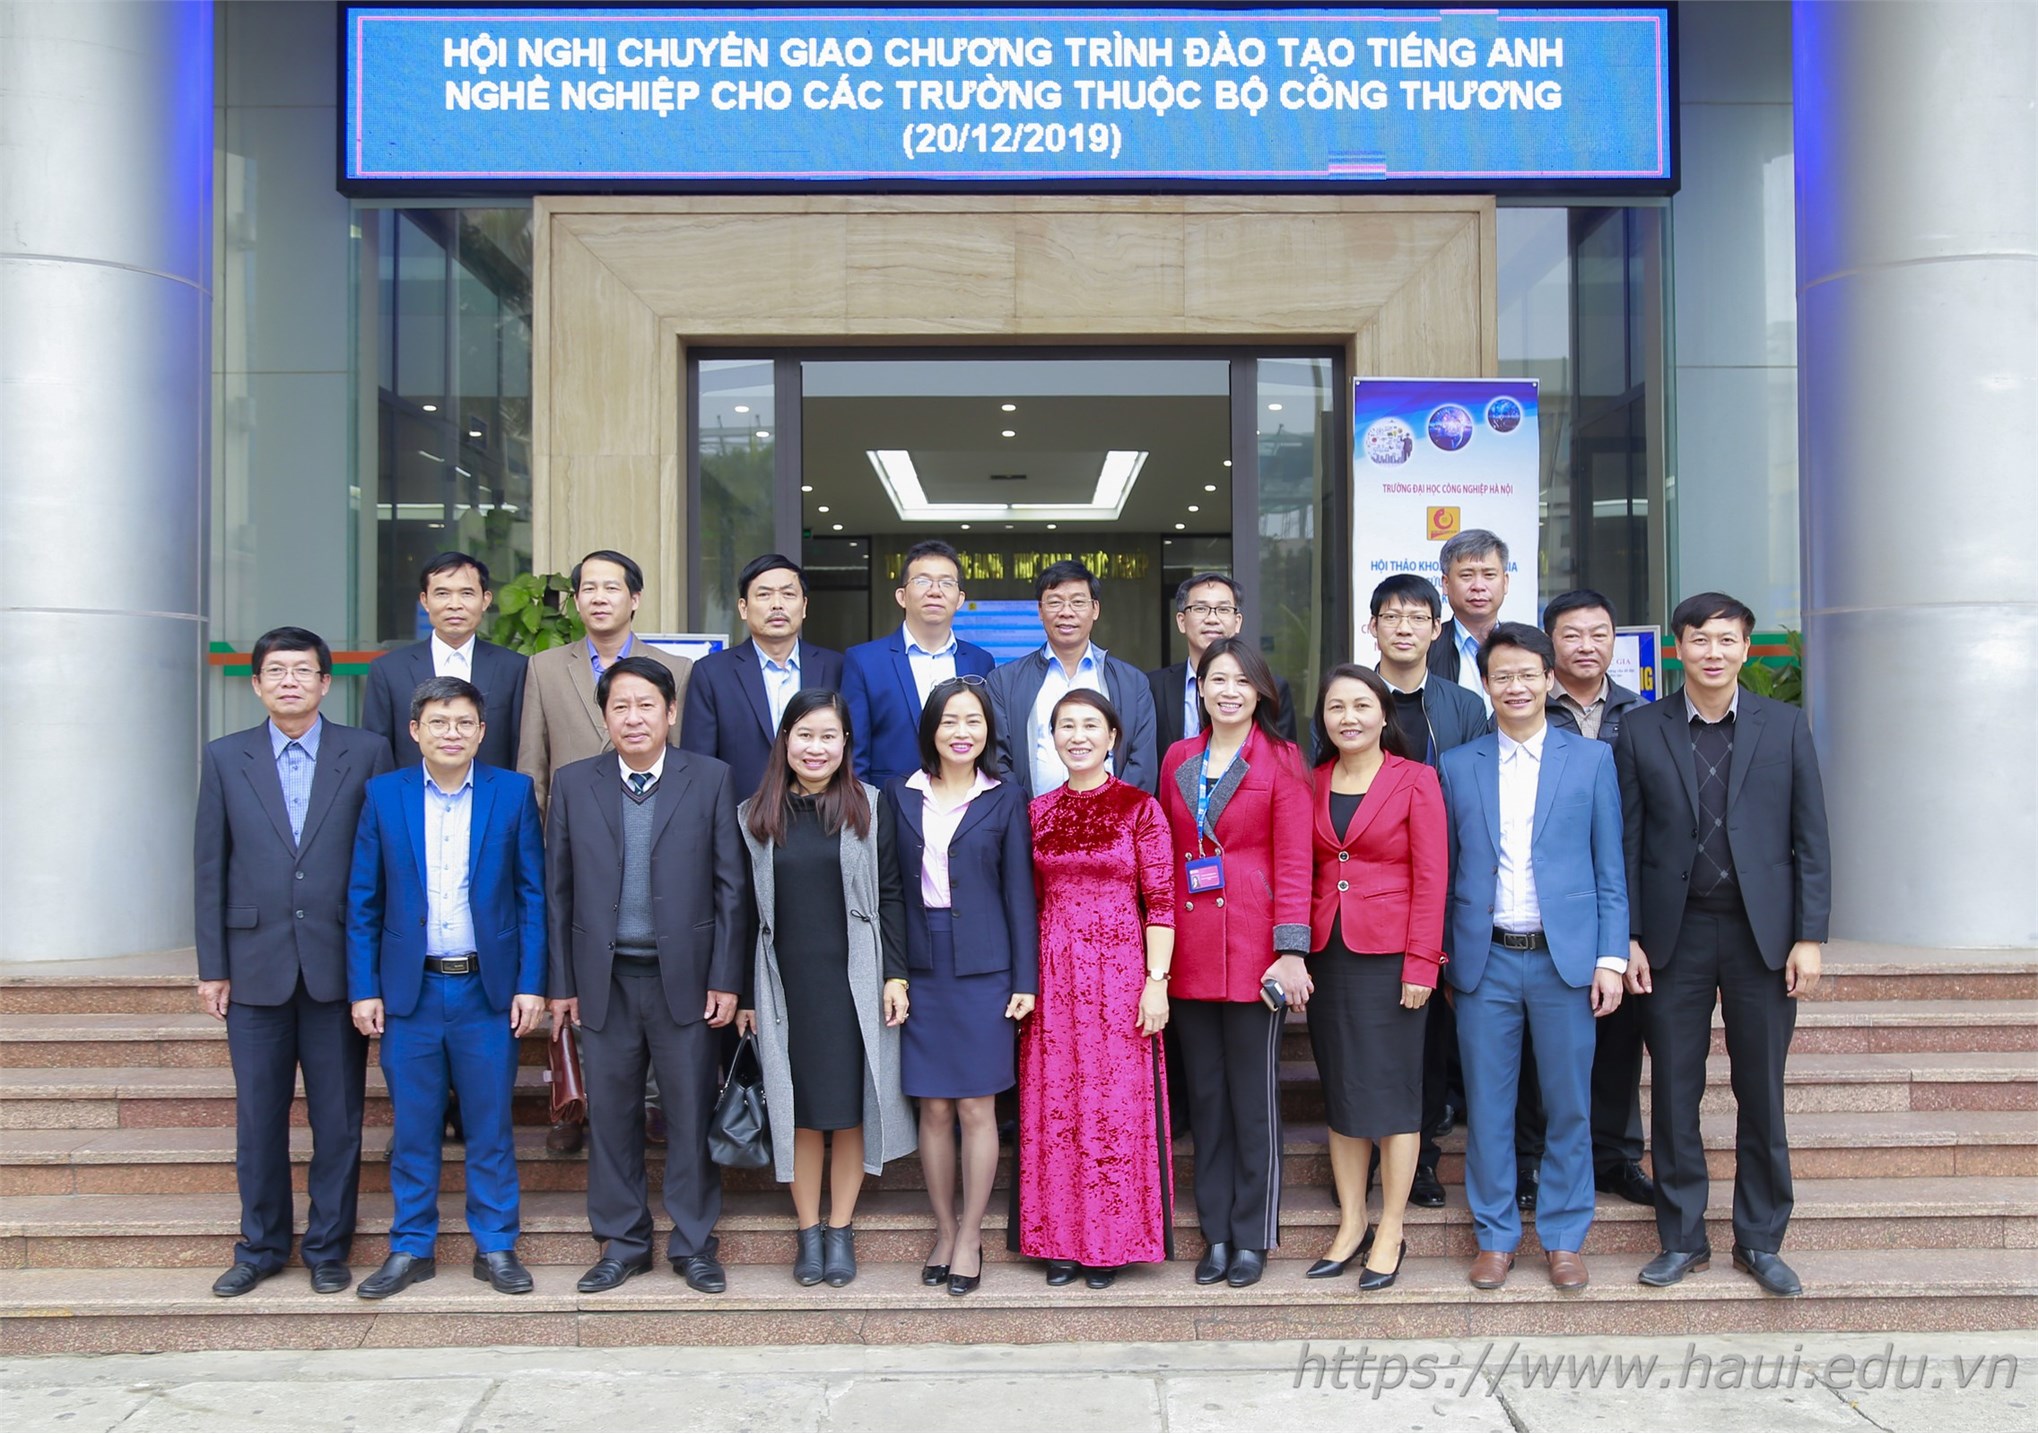 Đại học Công nghiệp Hà Nội chuyển giao chương trình đào tạo tiếng Anh nghề nghiệp cho 27 trường đại học, cao đẳng